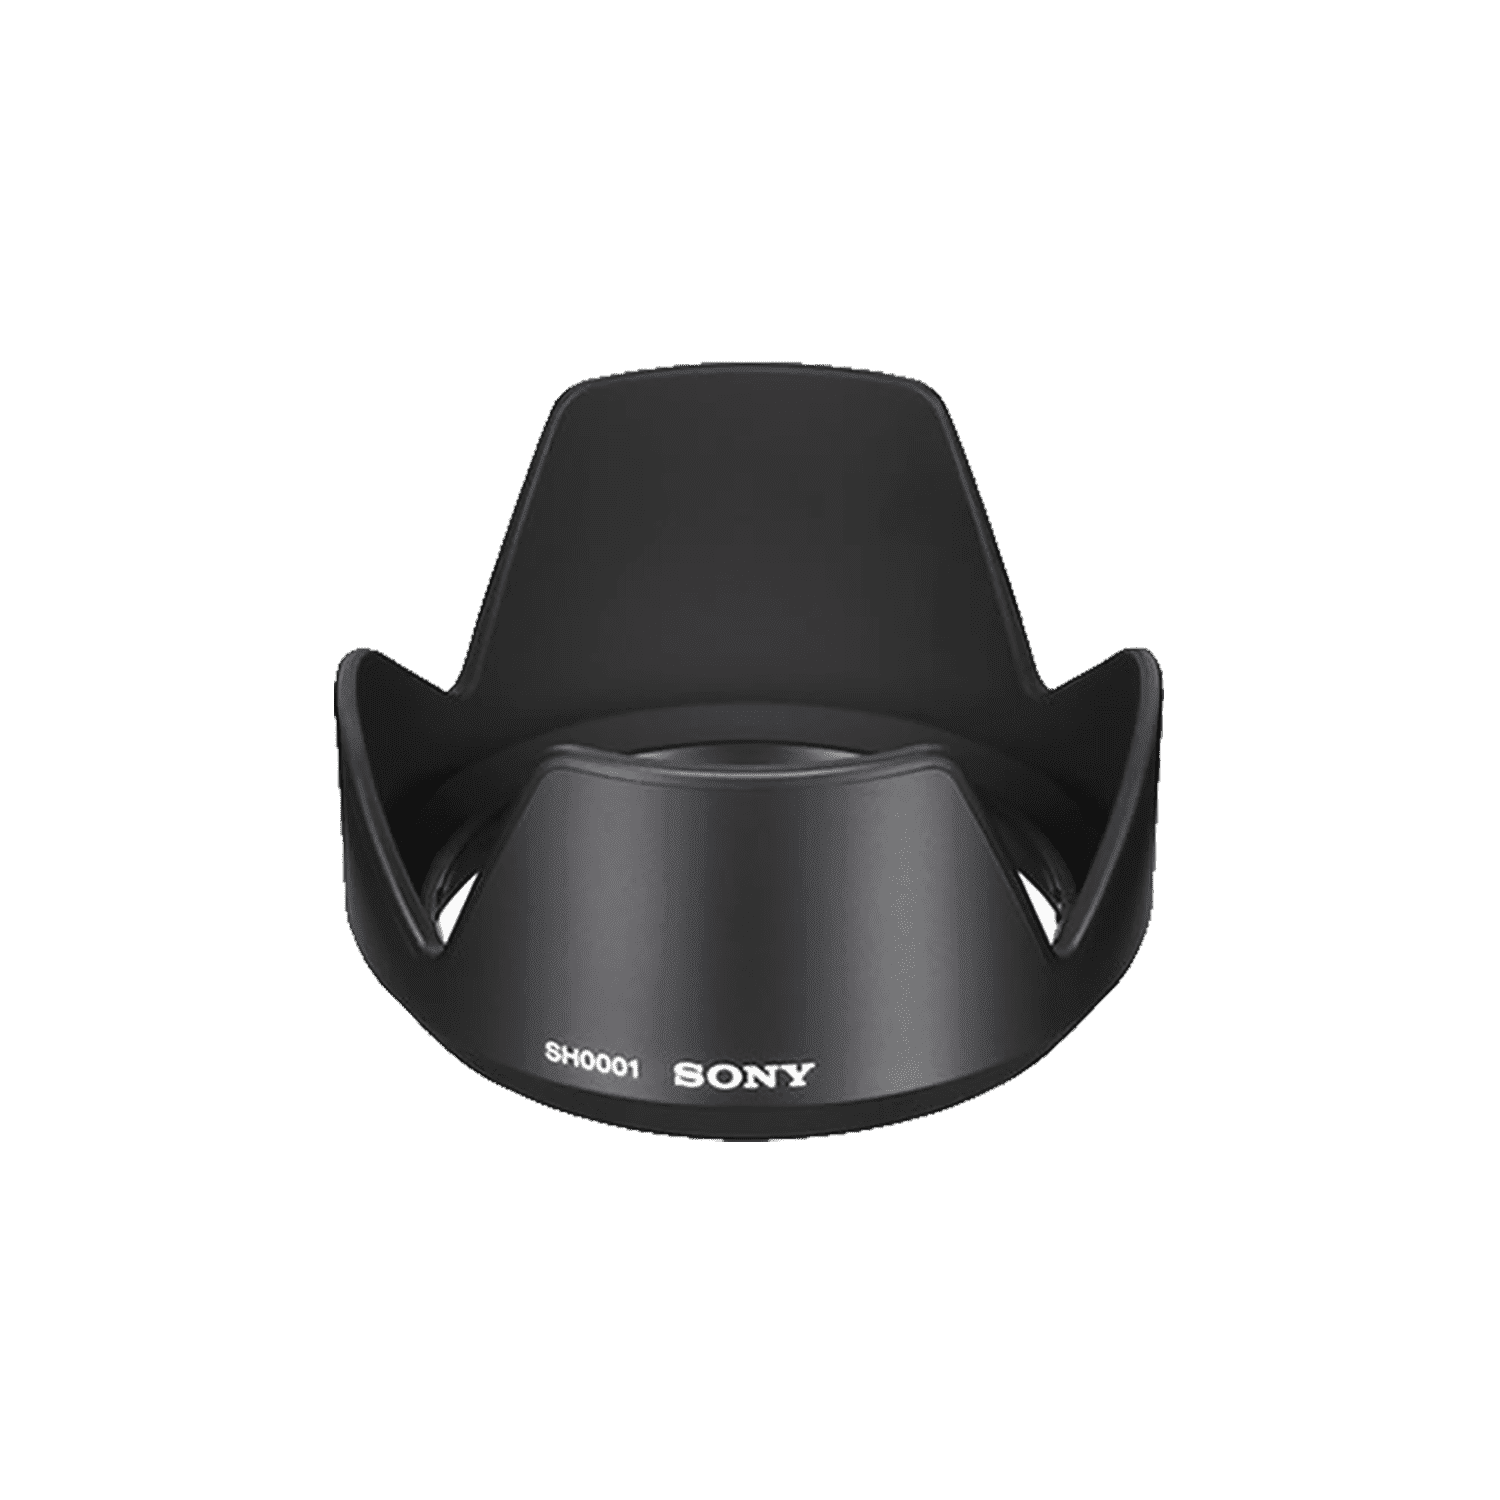 Sony ALC-SH0001 Lens Hood for SAL35F14G